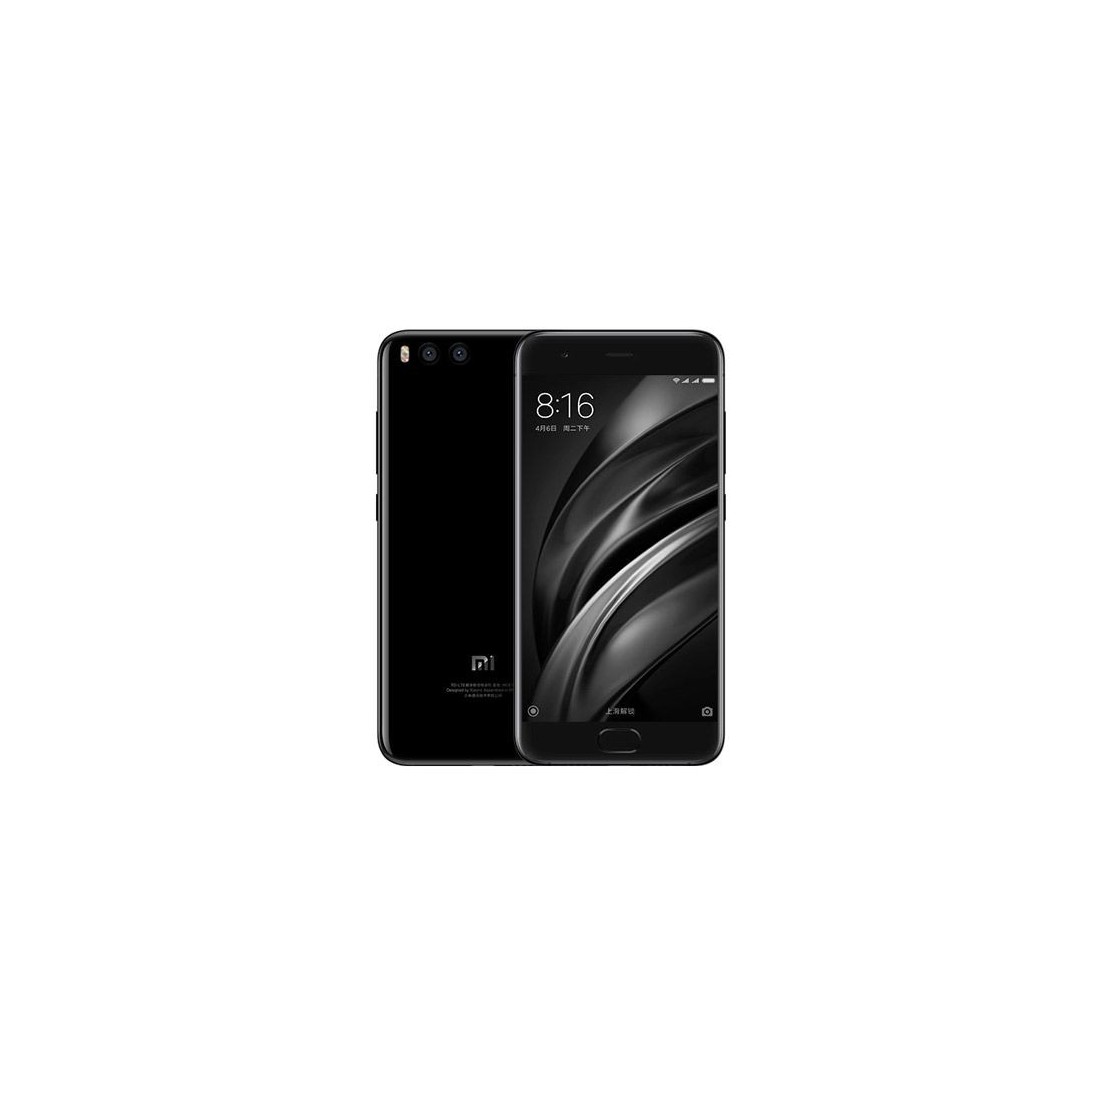 Xiaomi Mi 6 Dual SIM - 128GB, 6GB RAM, 4G LTE, Black